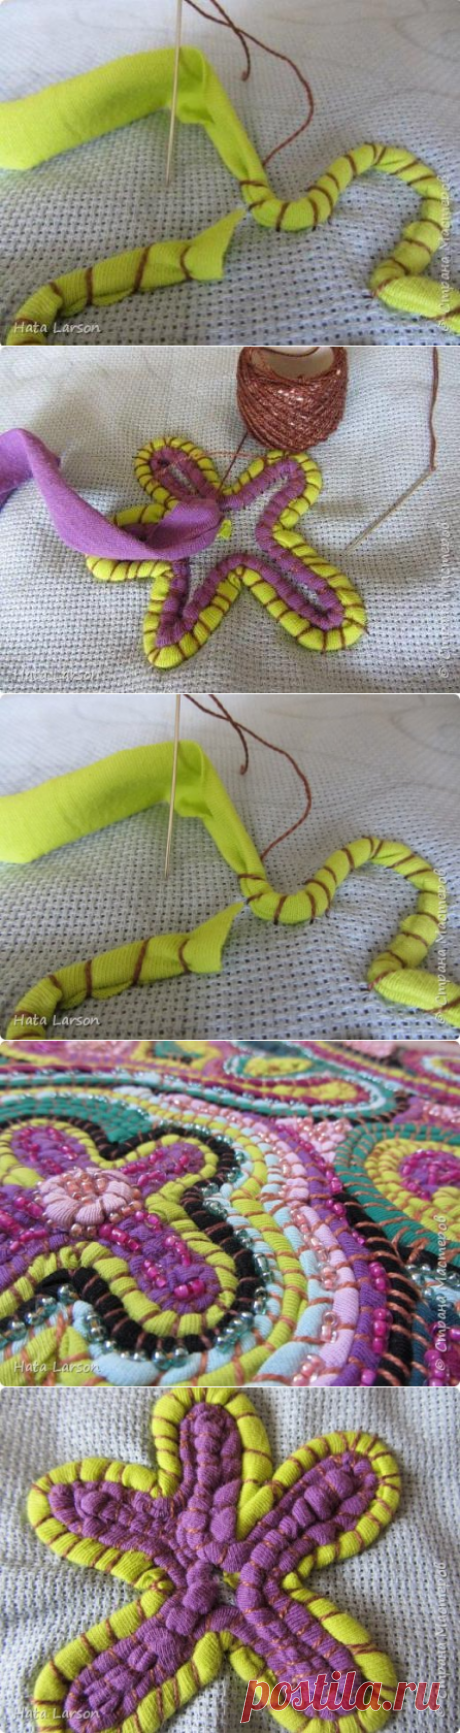 Удивительные вышивки трикотажными полосками — Делаем Руками